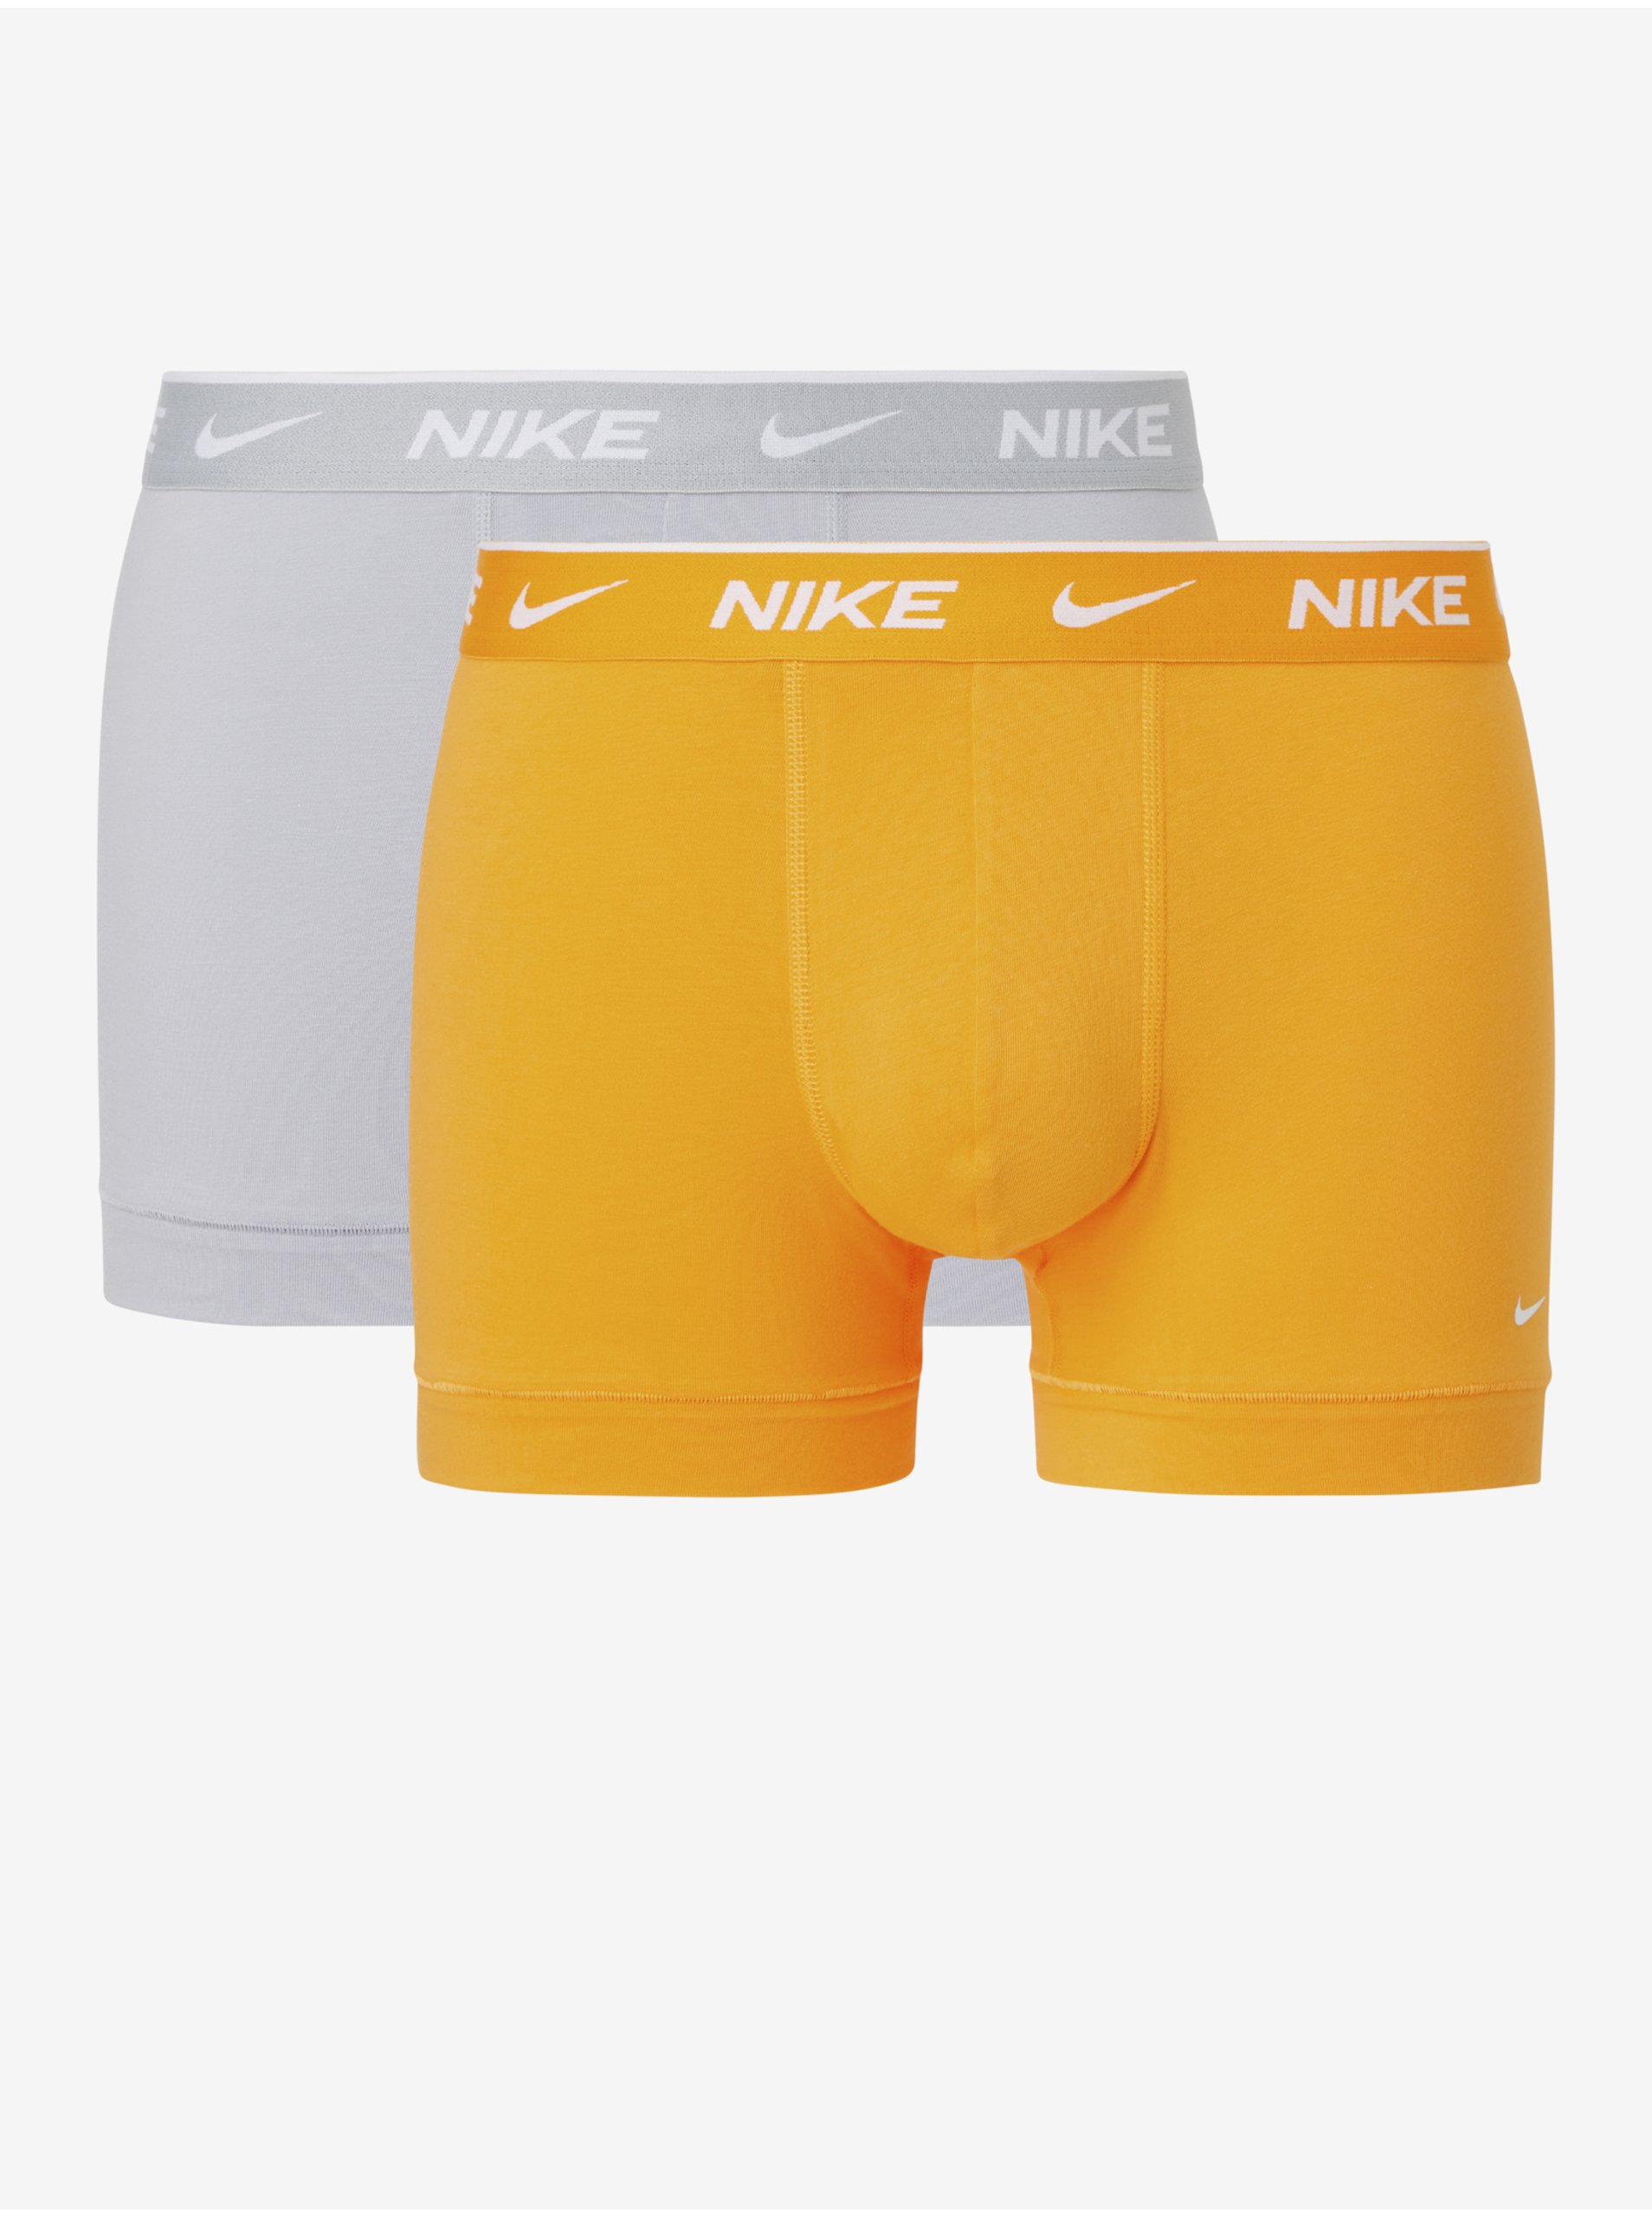 Lacno Súprava dvoch pánskych boxeriek v oranžovej a svetlosivej farbe Nike